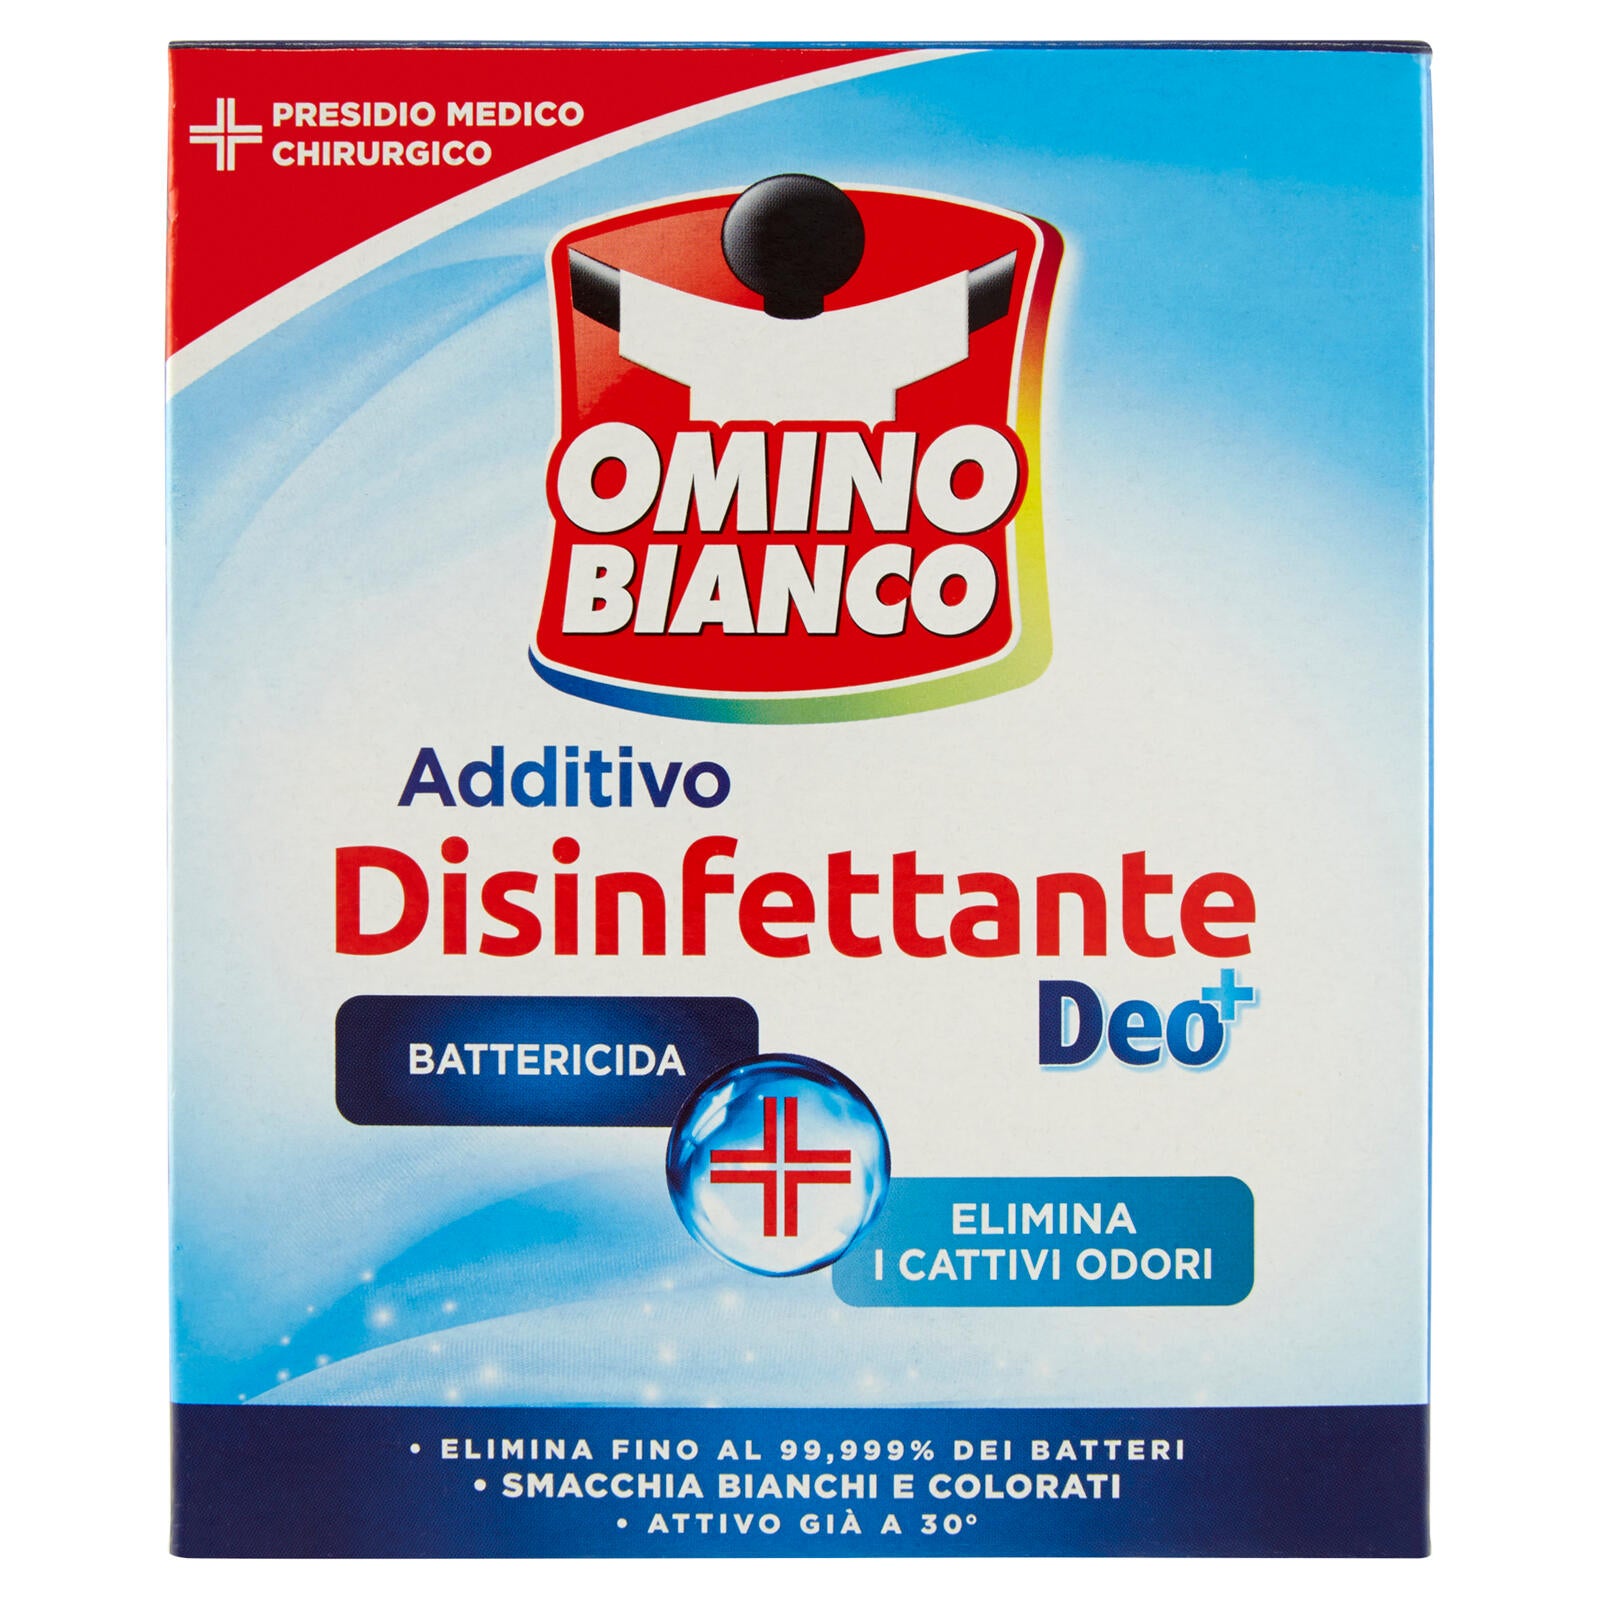 Omino Bianco Additivo Disinfettante Deo+ 450 g ->